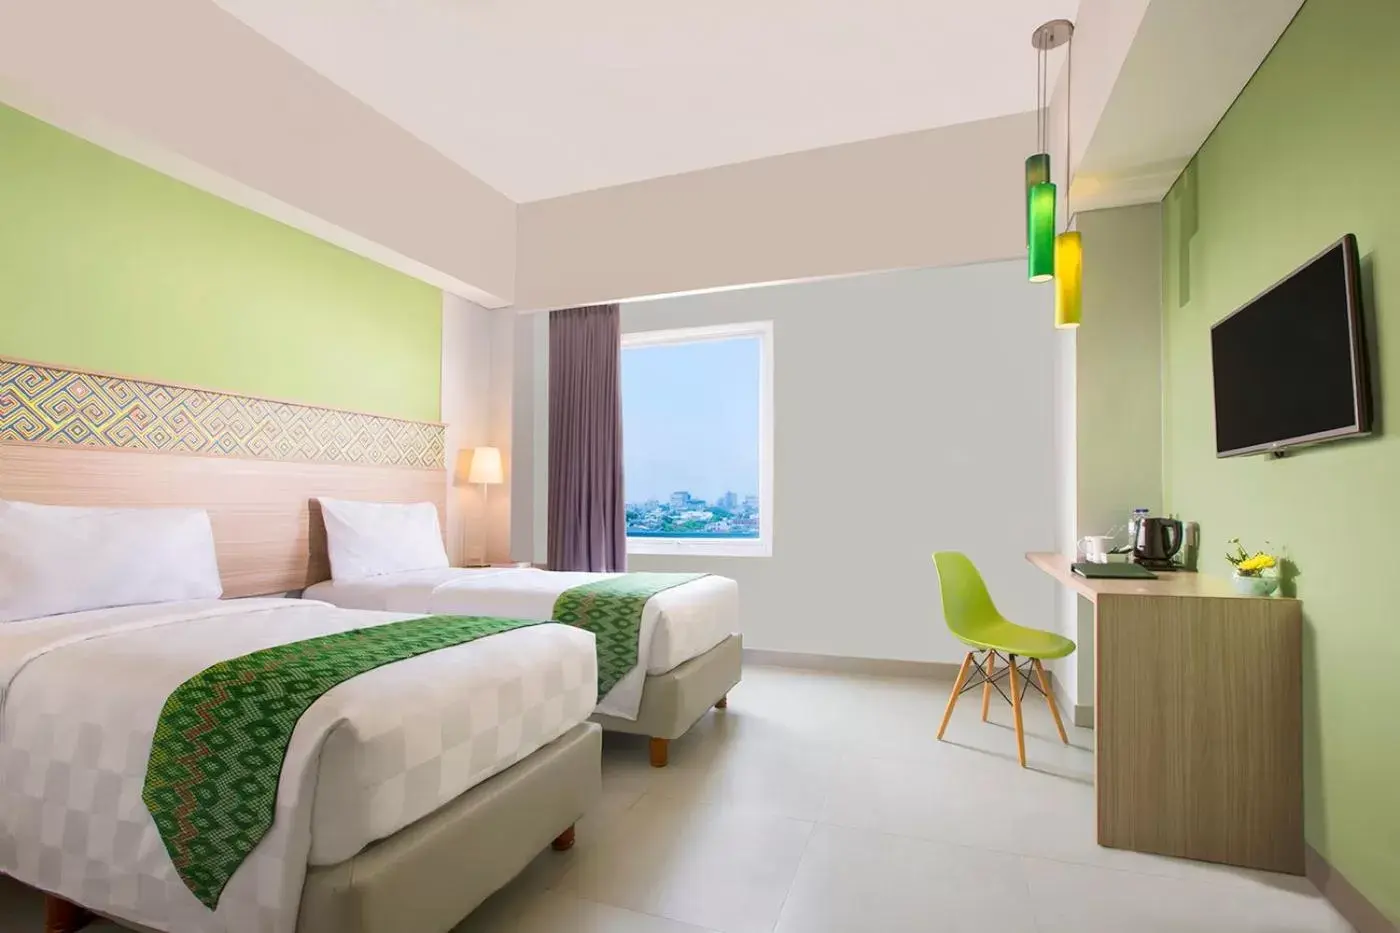 Bedroom in KHAS Makassar Hotel